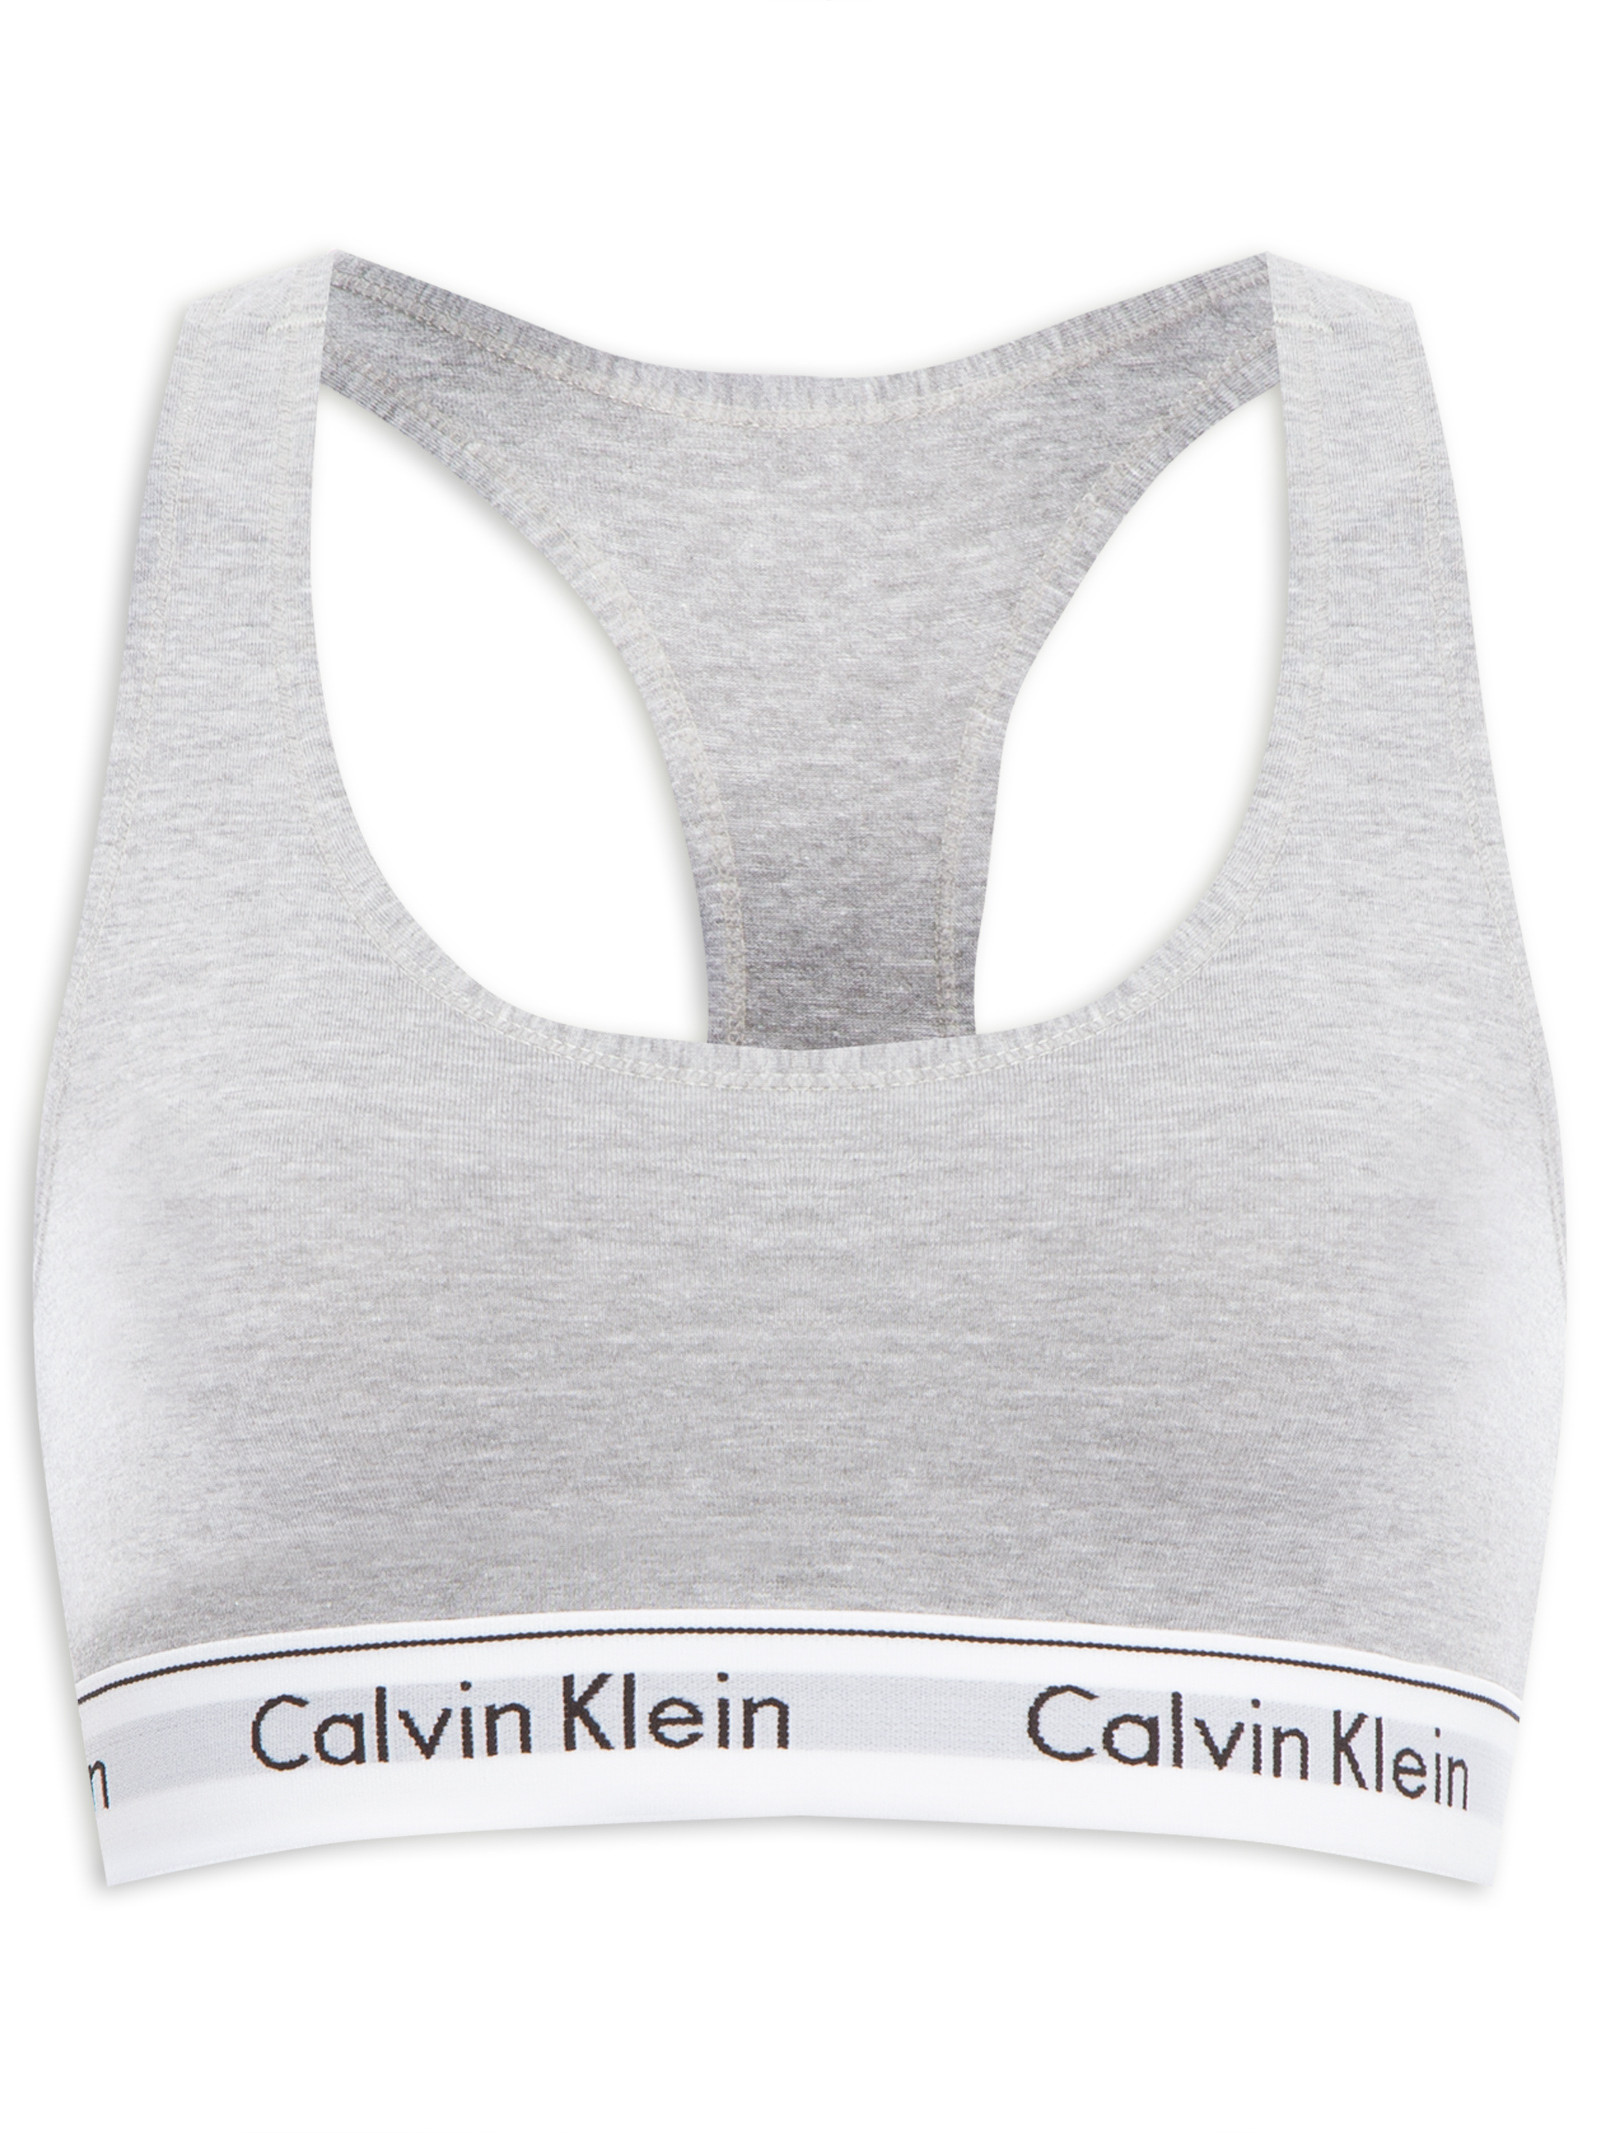 Top Nadador Modern Cotton - Calvin Klein Underwear - Cinza - Shop2gether